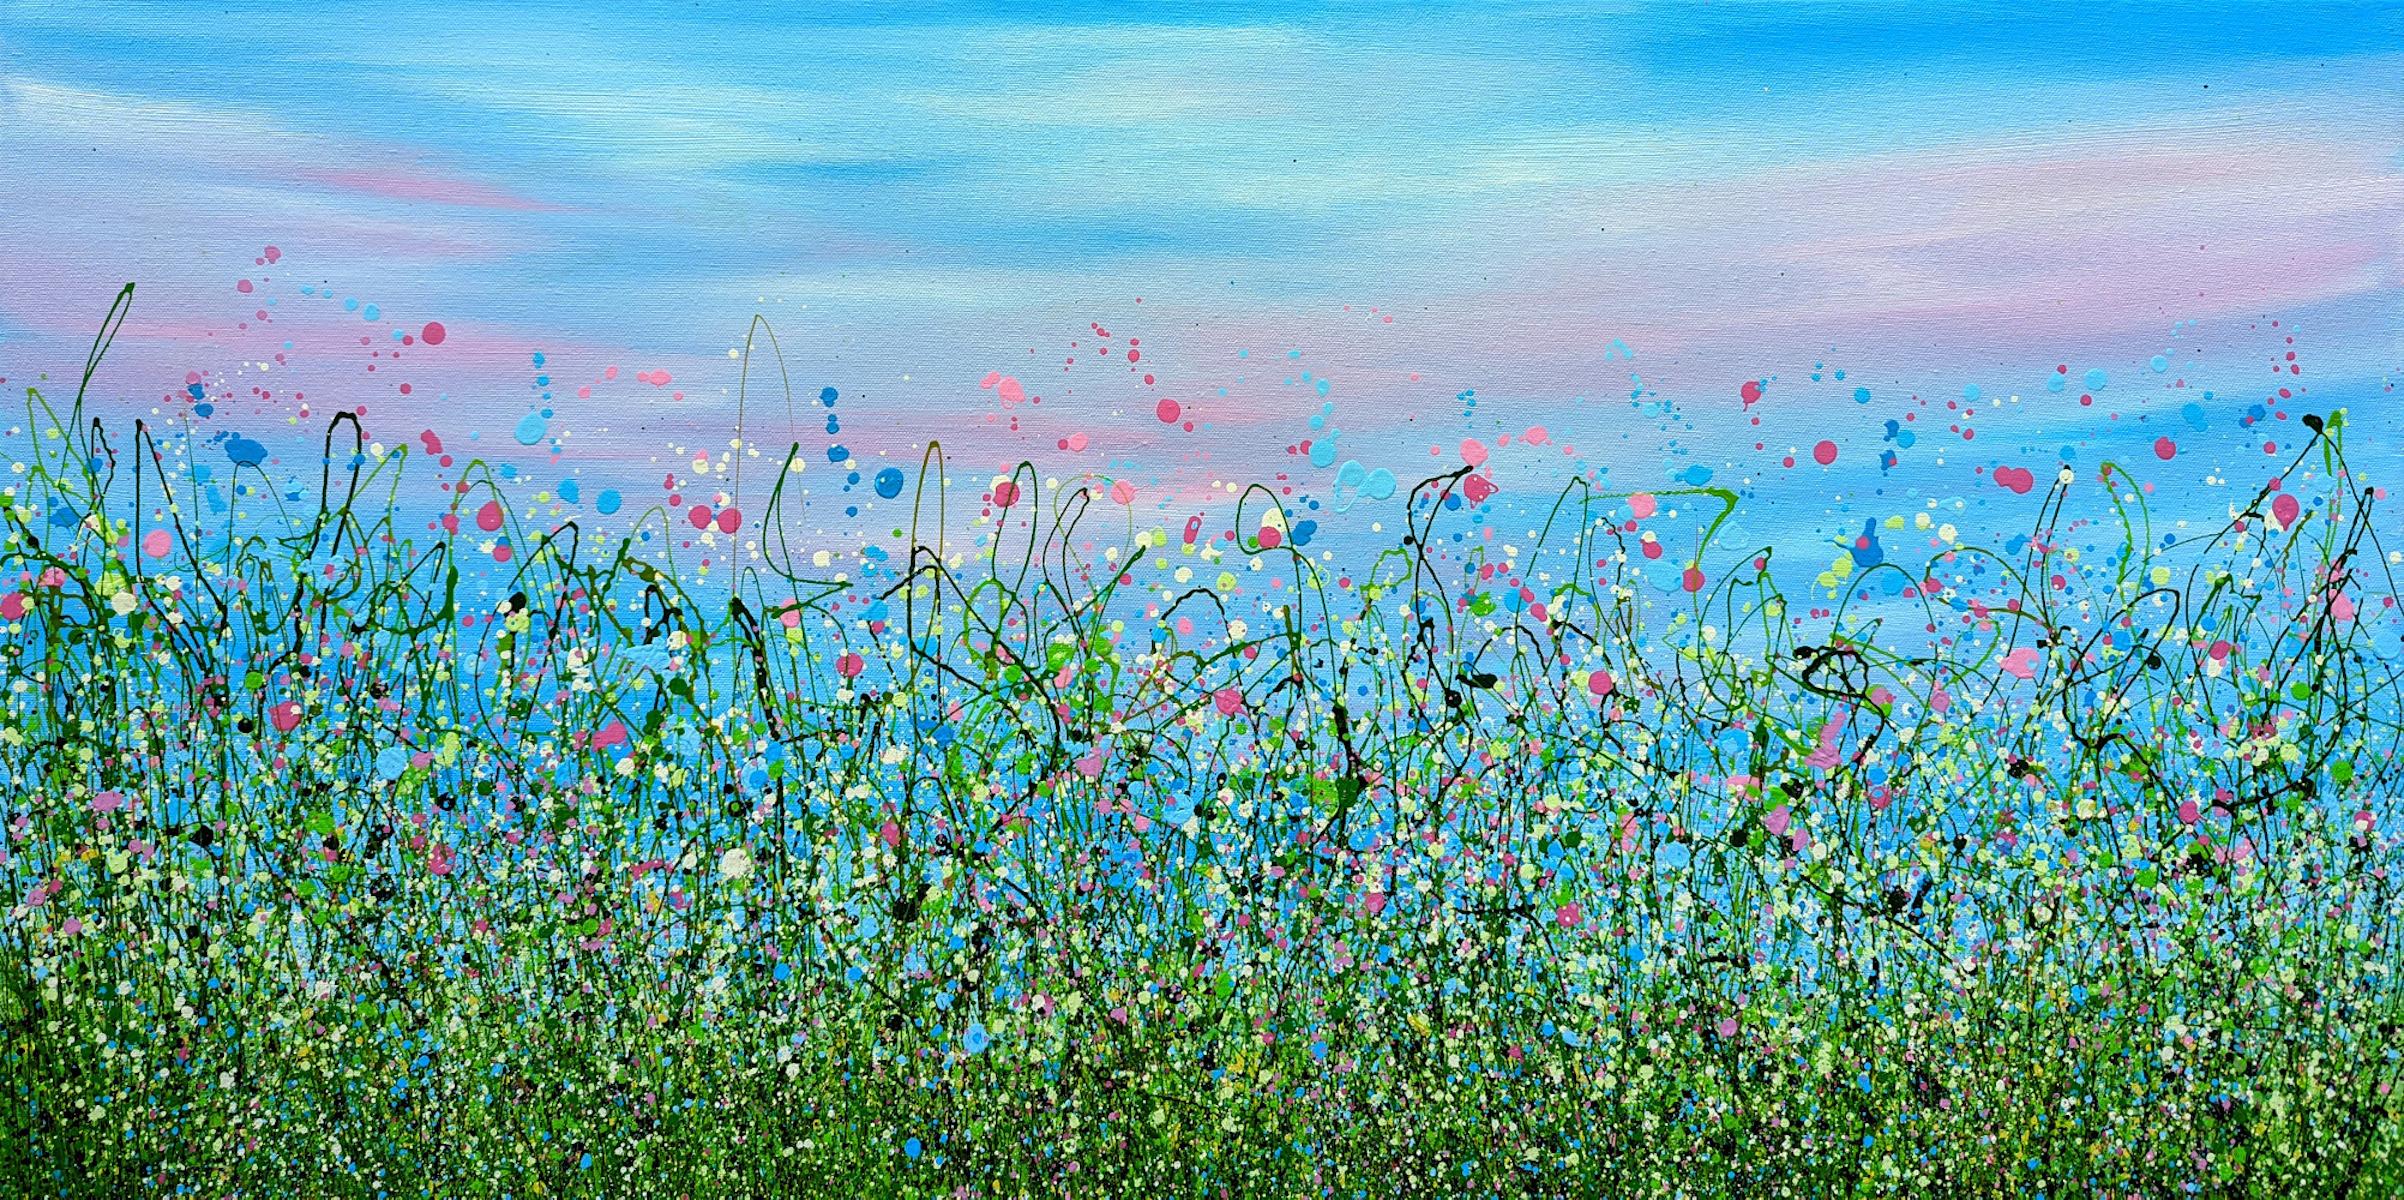 Wild & Frei - Enchanted Meadows #4 - Von Lucy Moore [2022]
original und handsigniert vom Künstler 

Acryl auf Leinwand

Bildgröße: H:60 cm x B:98 cm

Gesamtgröße des ungerahmten Werks: H:60 cm x B:98 cm x T:1,5cm

Ungerahmt verkauft

Bitte beachten